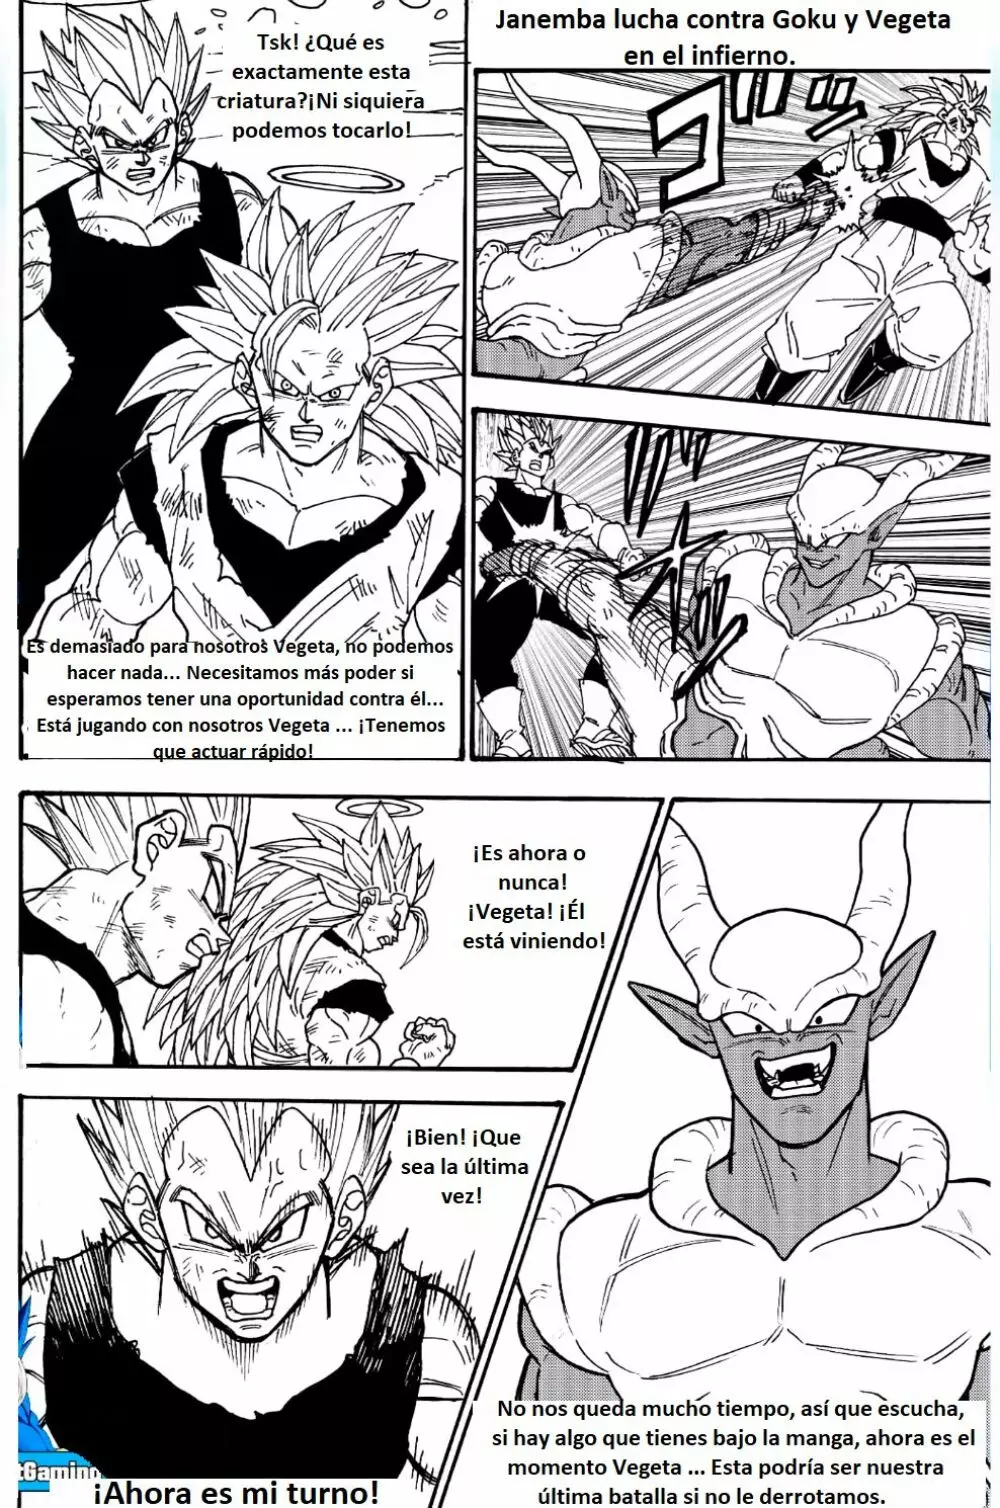 Goku y Vegeta vs Janemba 2ページ